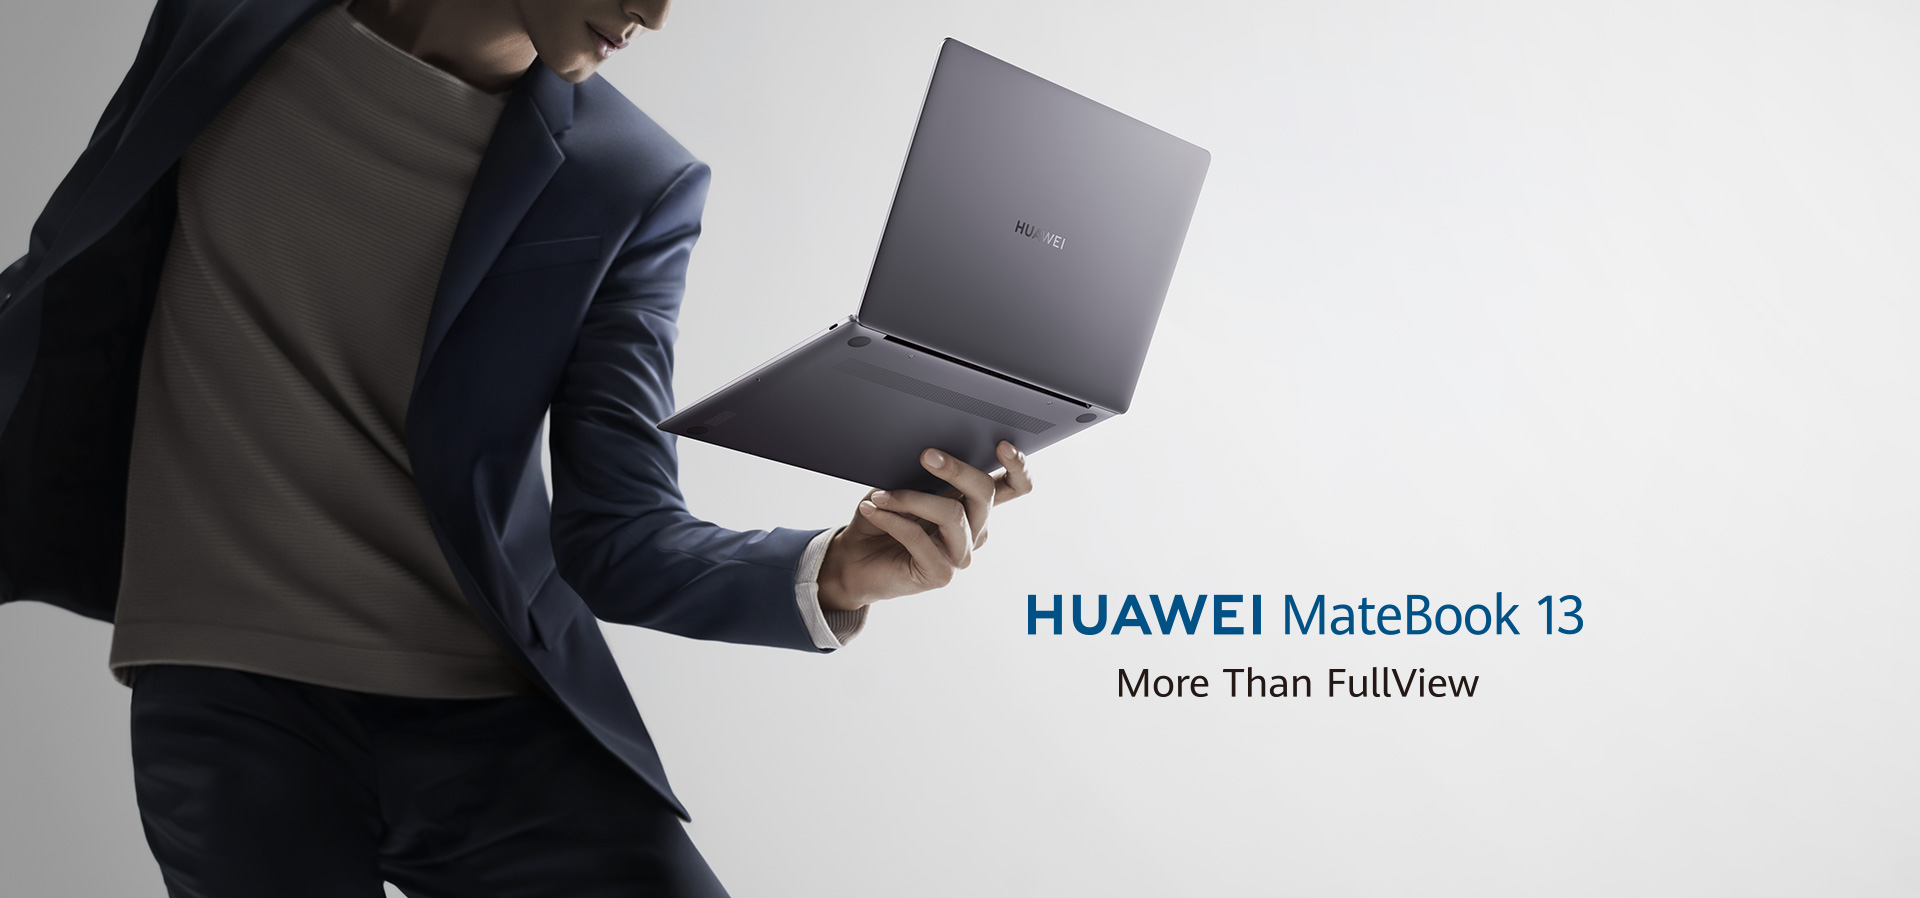 Huawei MateBook 13 man holding